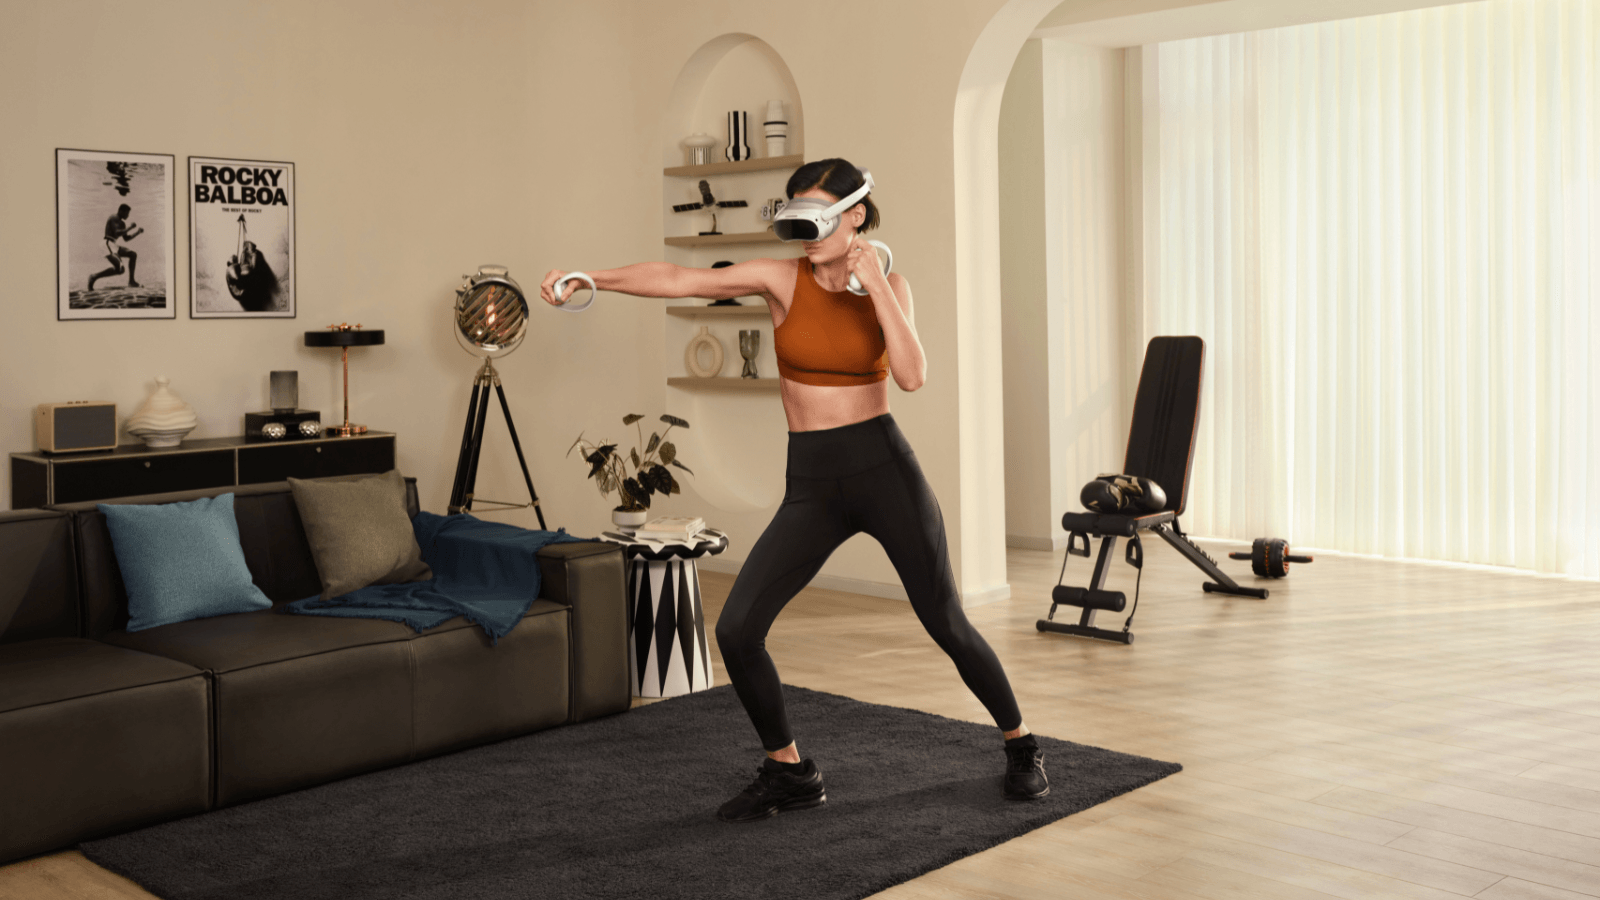 PICO 4 All-in-One VR Headset (Gafas de Realidad Virtual) - Reacondicionado - XRShop